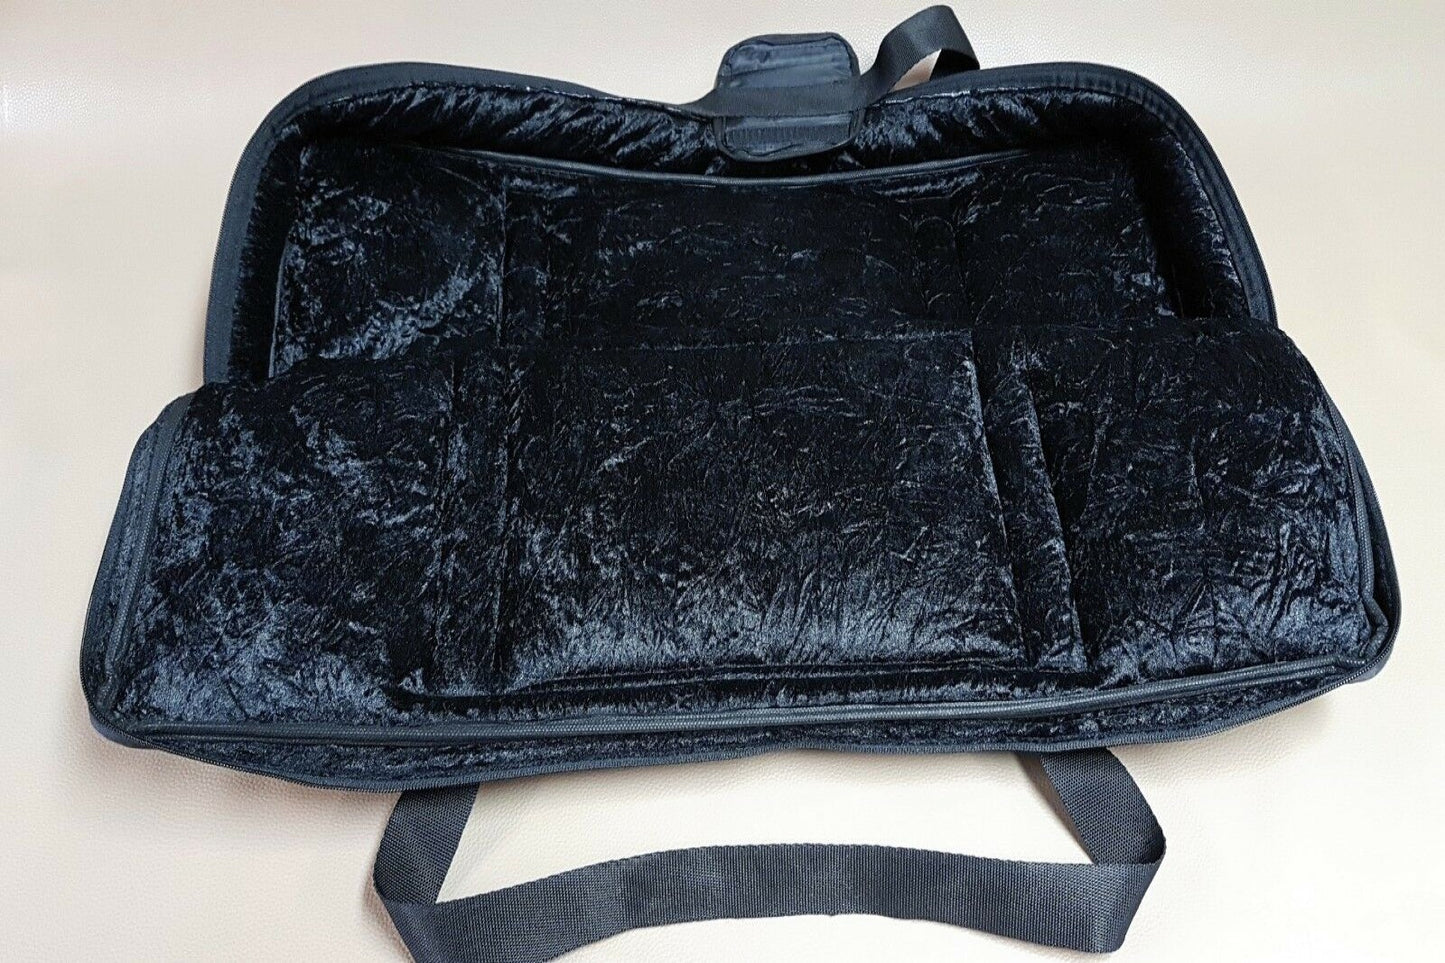 Custom padded travel bag soft case for Line6 floor board (2000's) LINE 6